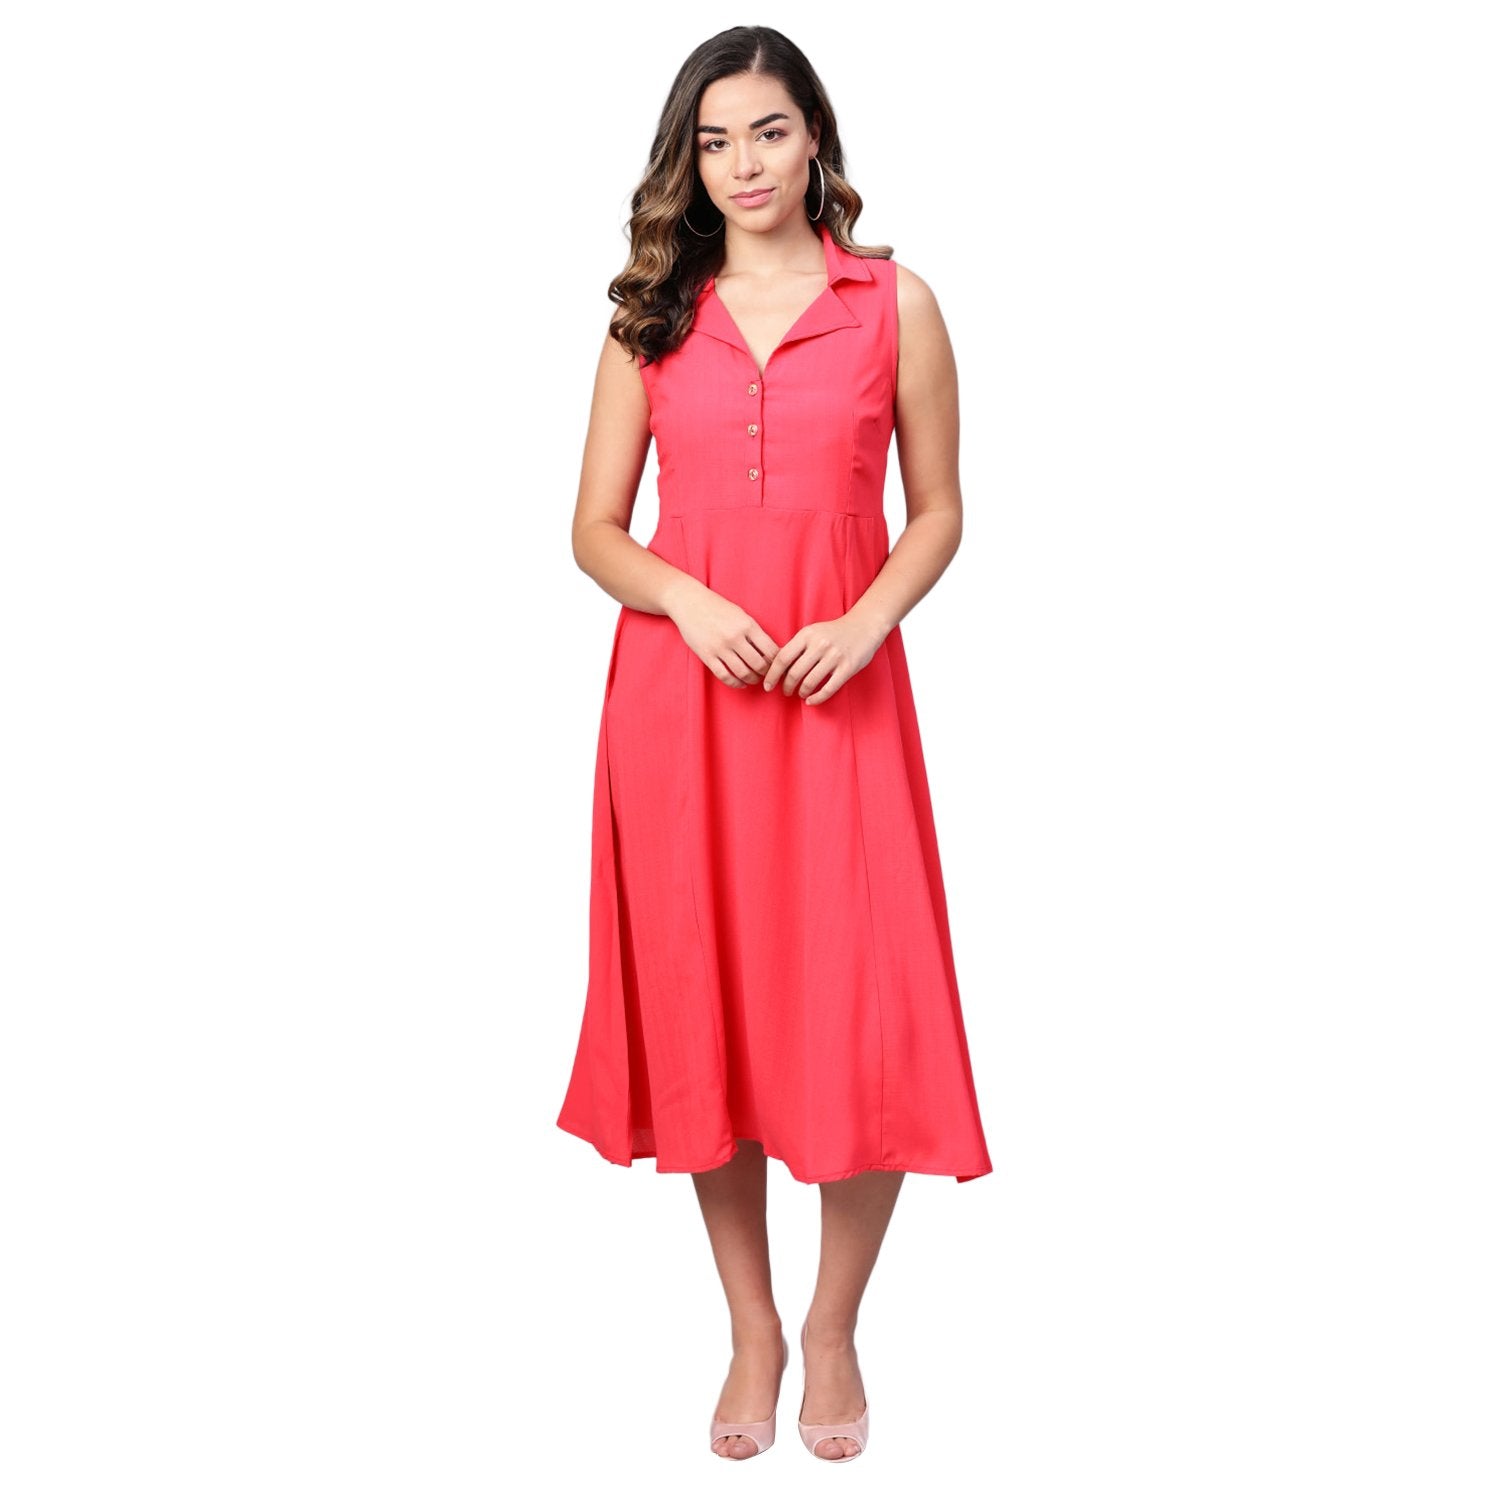 Women Pink Sleeveless Dress by Myshka (1 Pc Set)